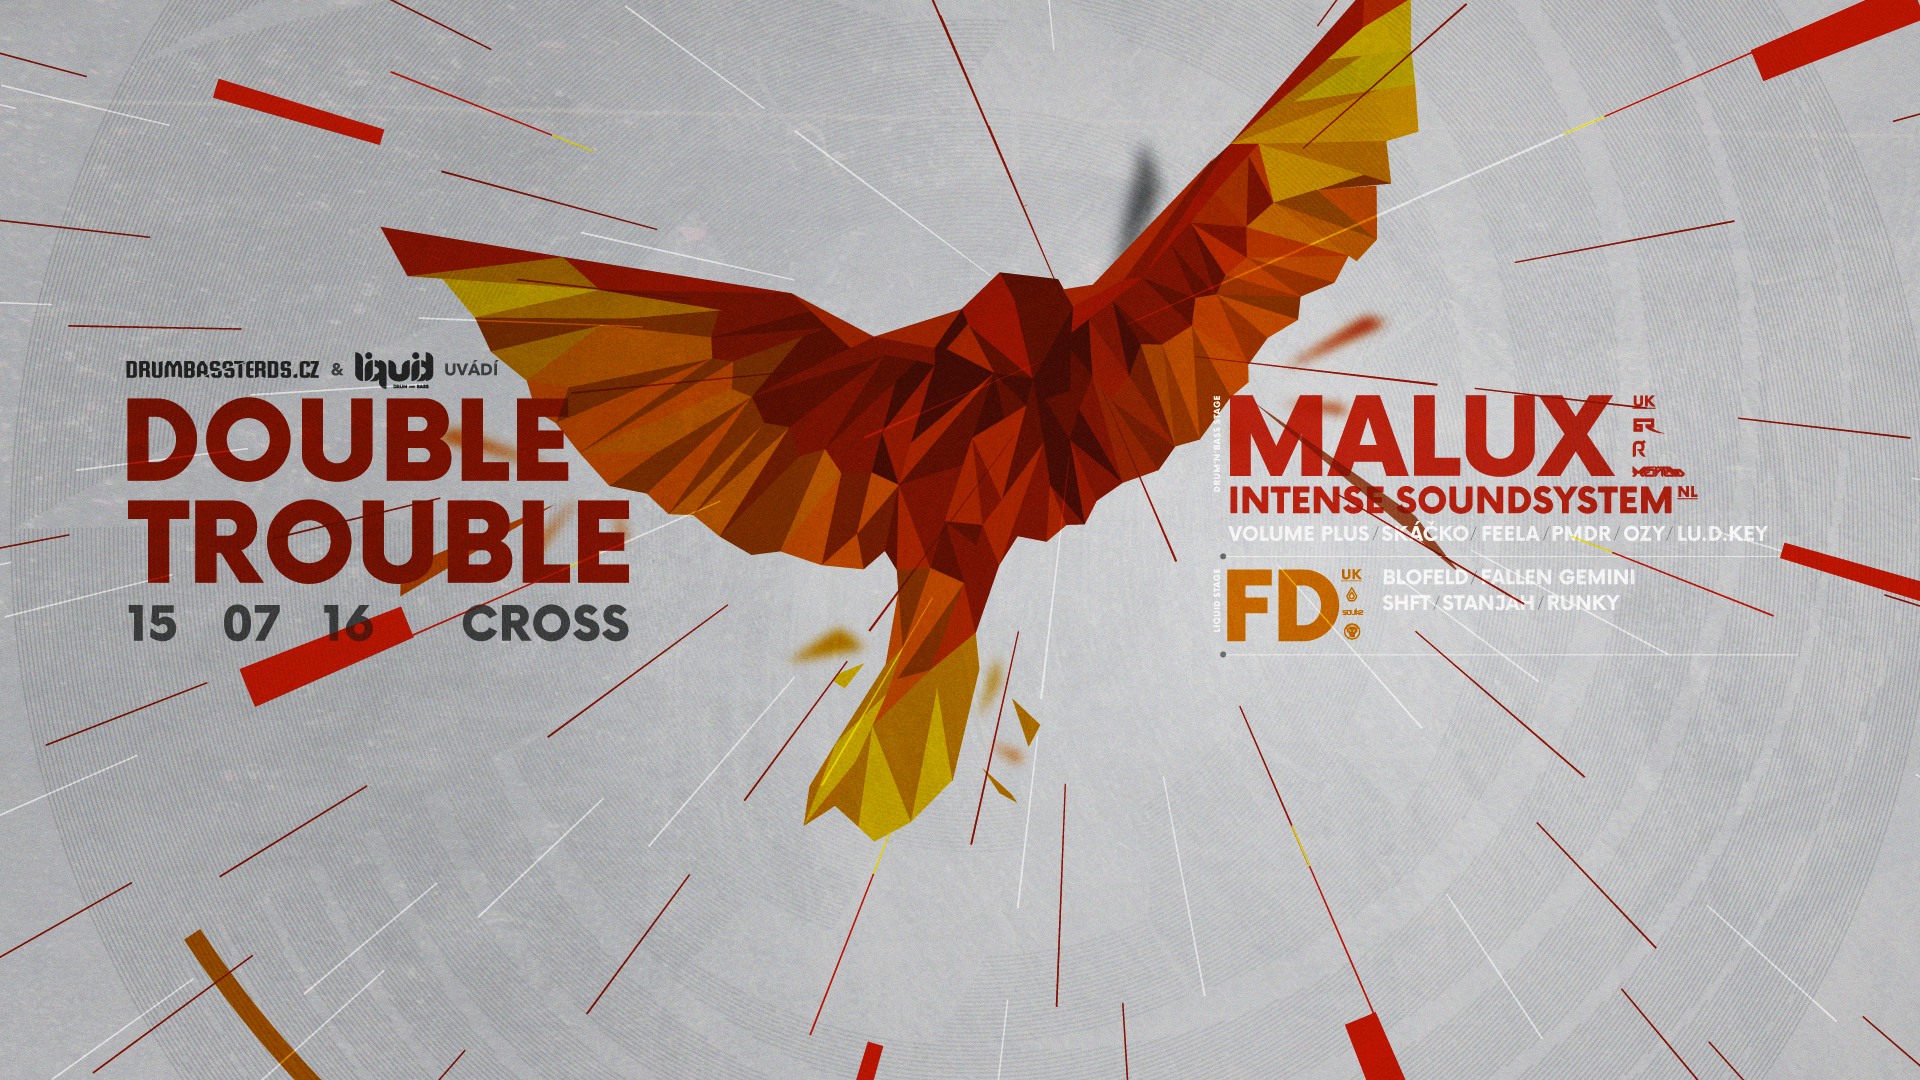 Double Trouble w/ MALUX UK & FD UK